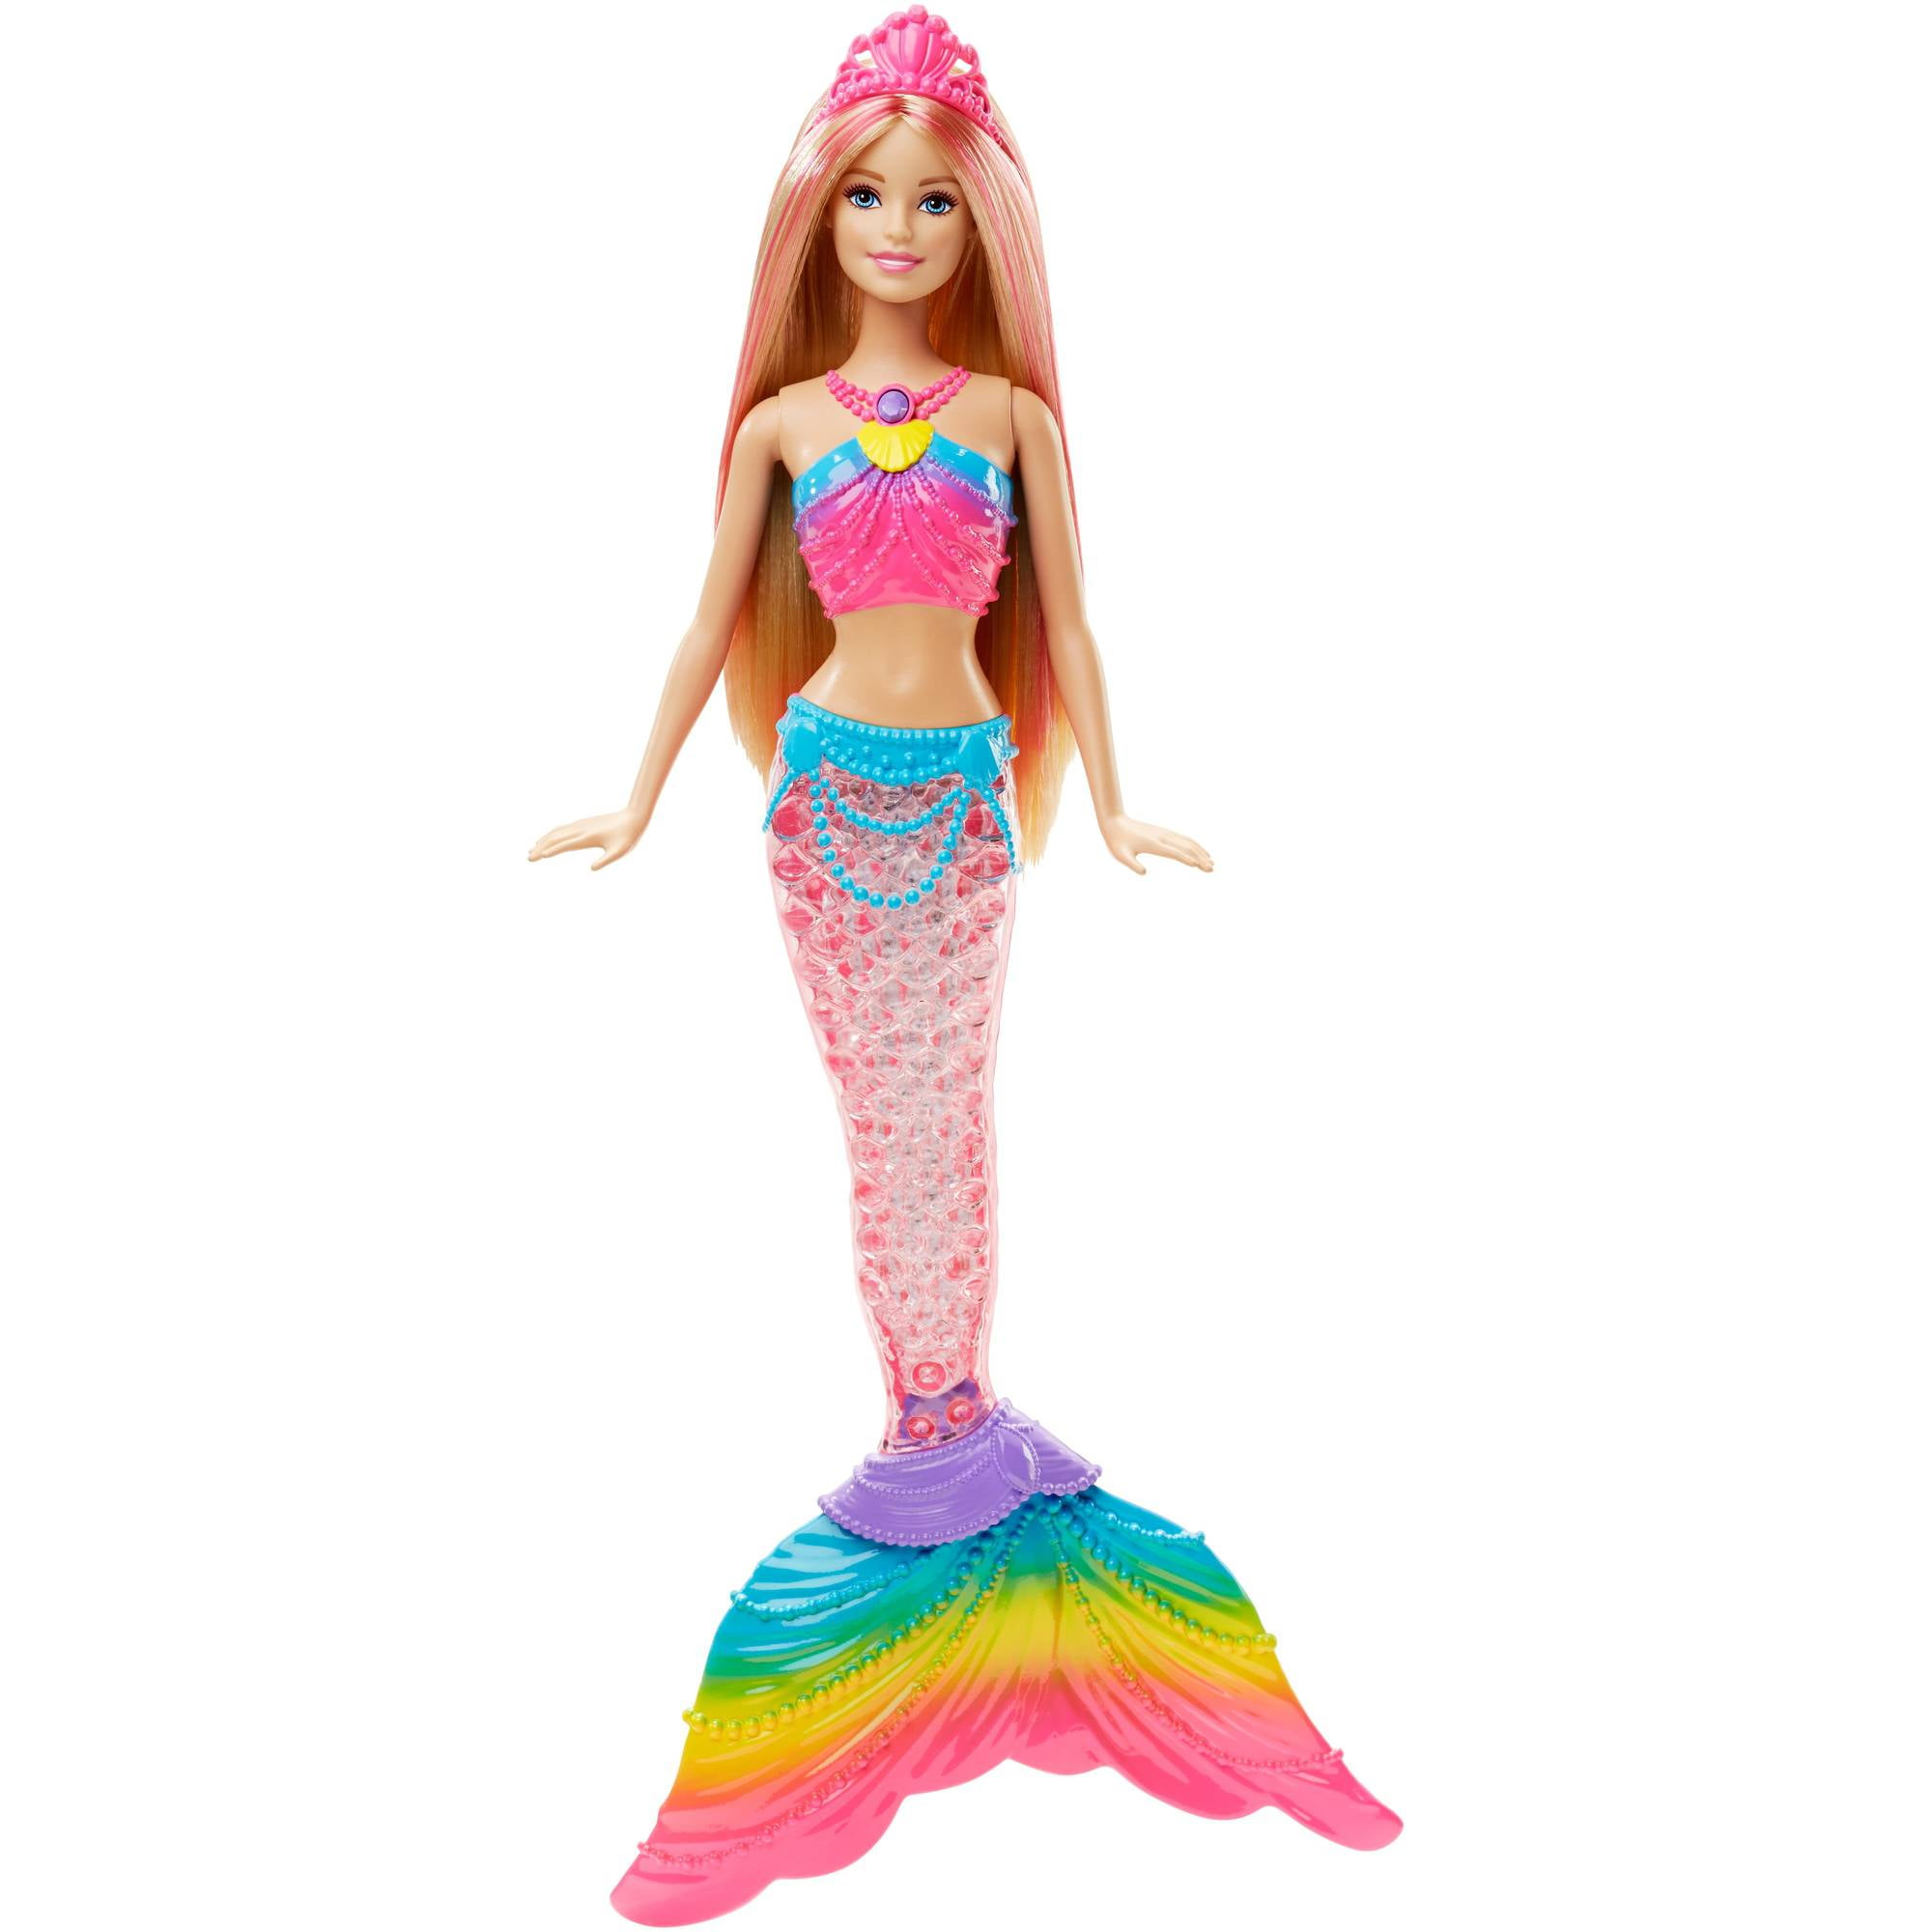 Barbie Rainbow Lights Mermaid Doll - Walmart.com